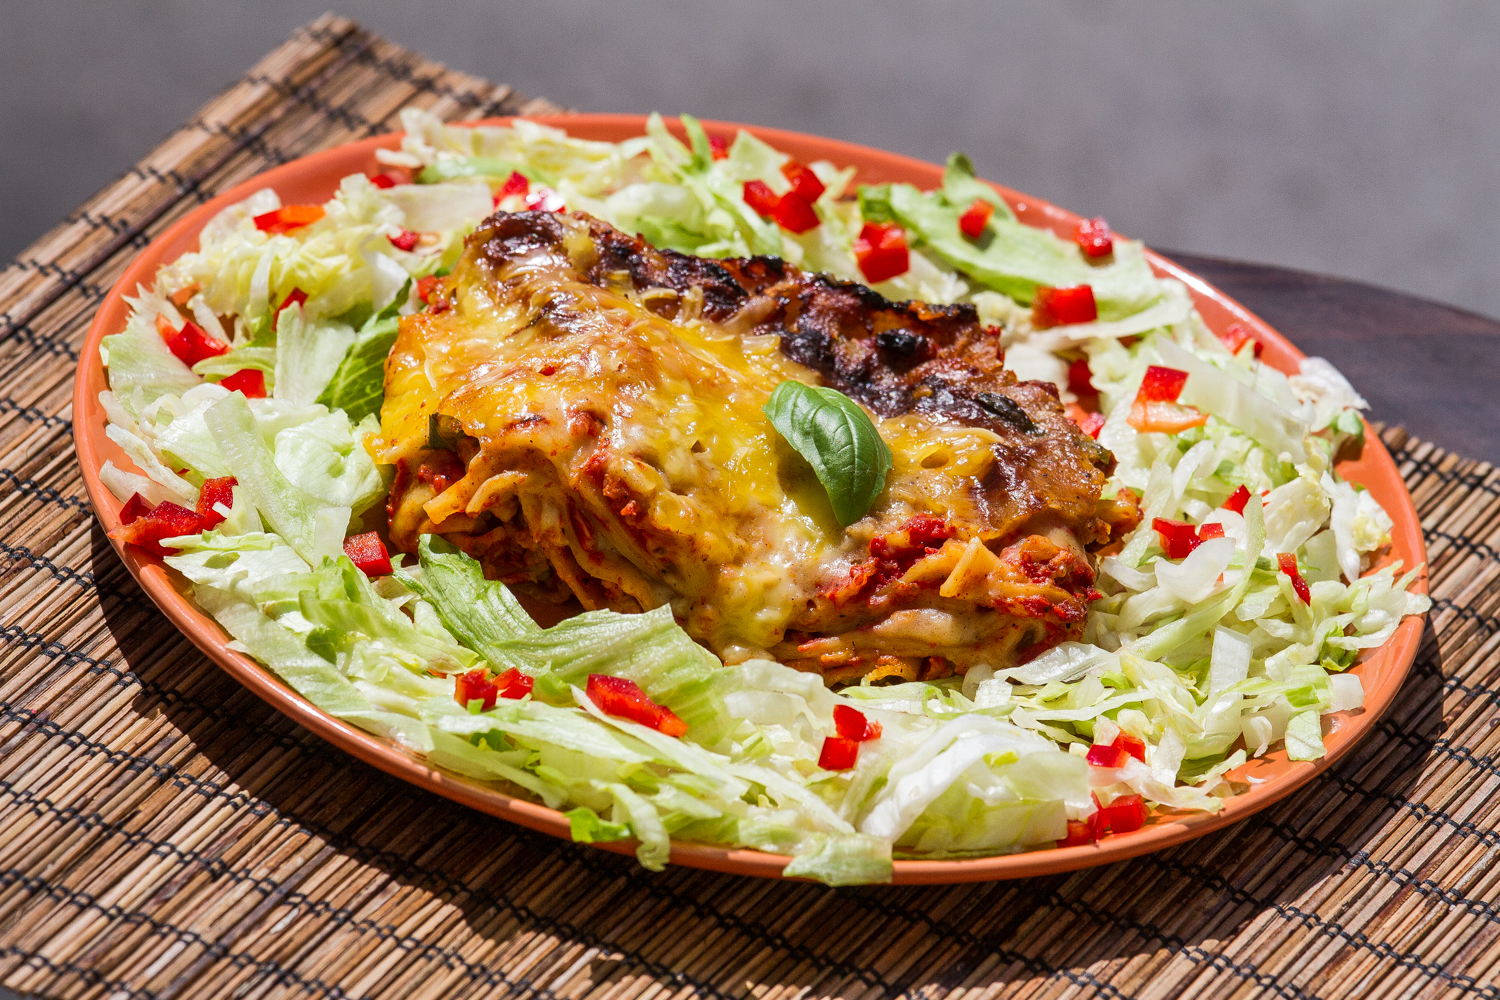 Vegán sajtburger és vegán lasagne a Hunyadi téren - Kozmosz étterem